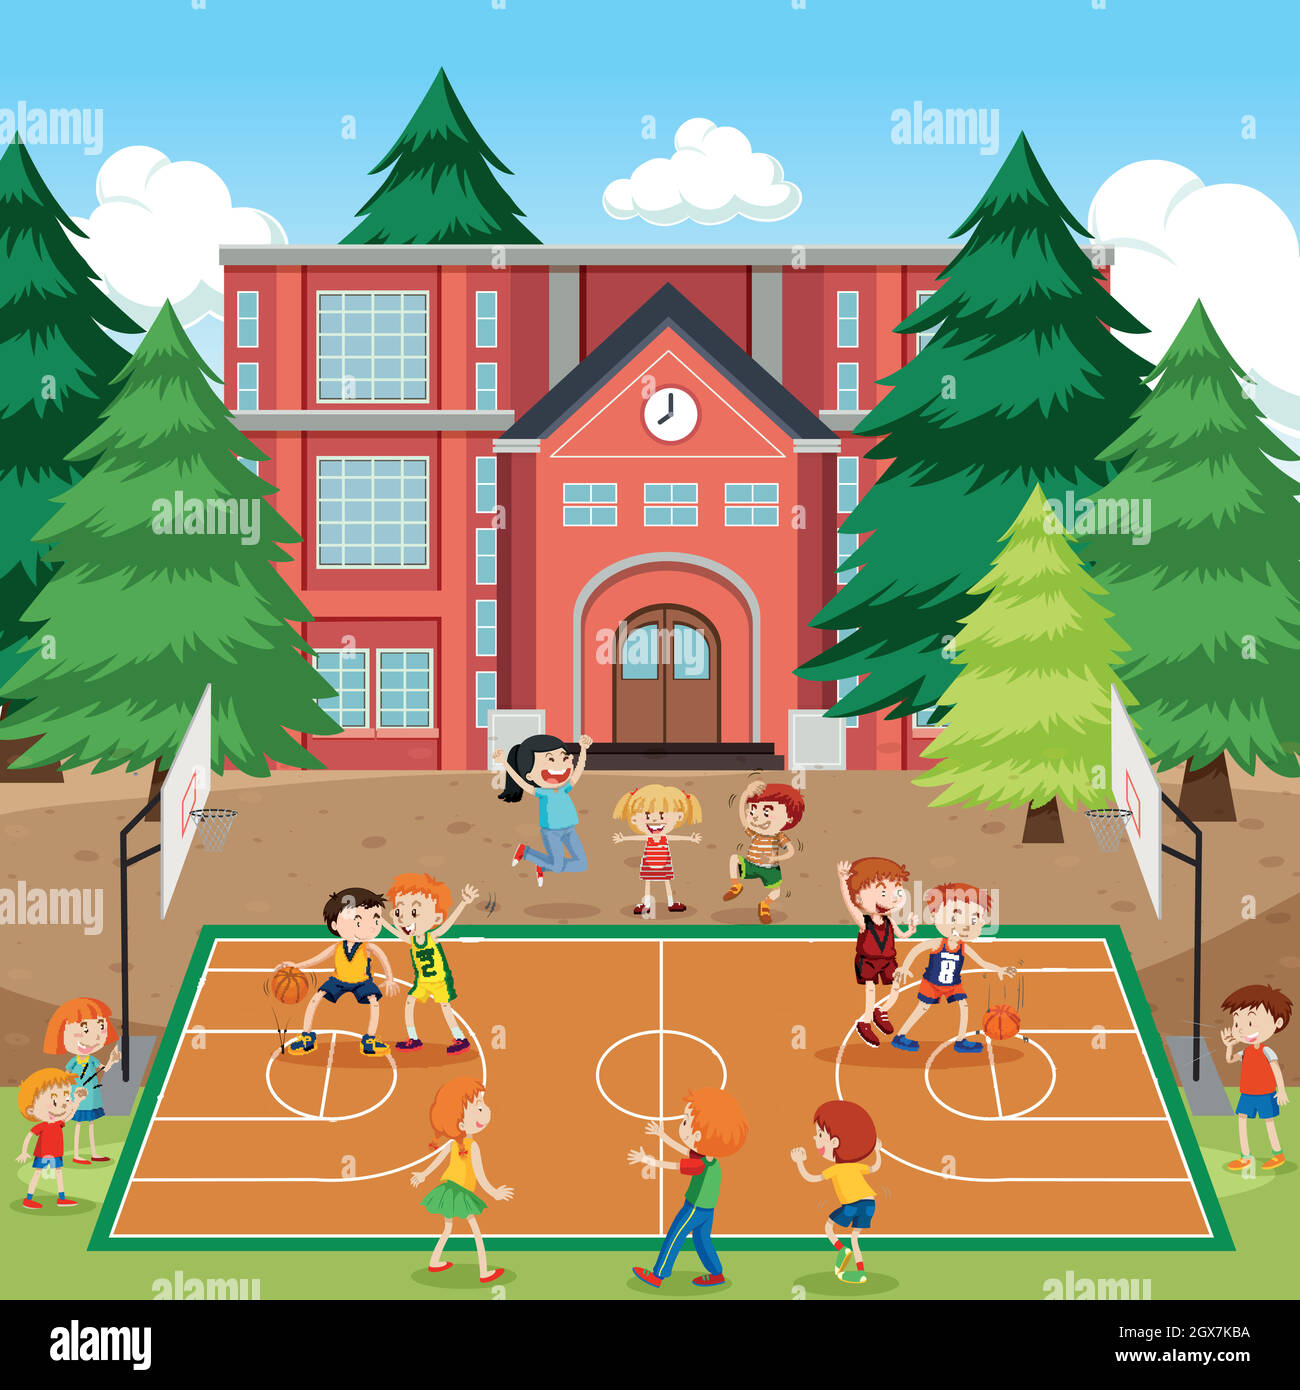 Children playing basketball scene Stock Vector